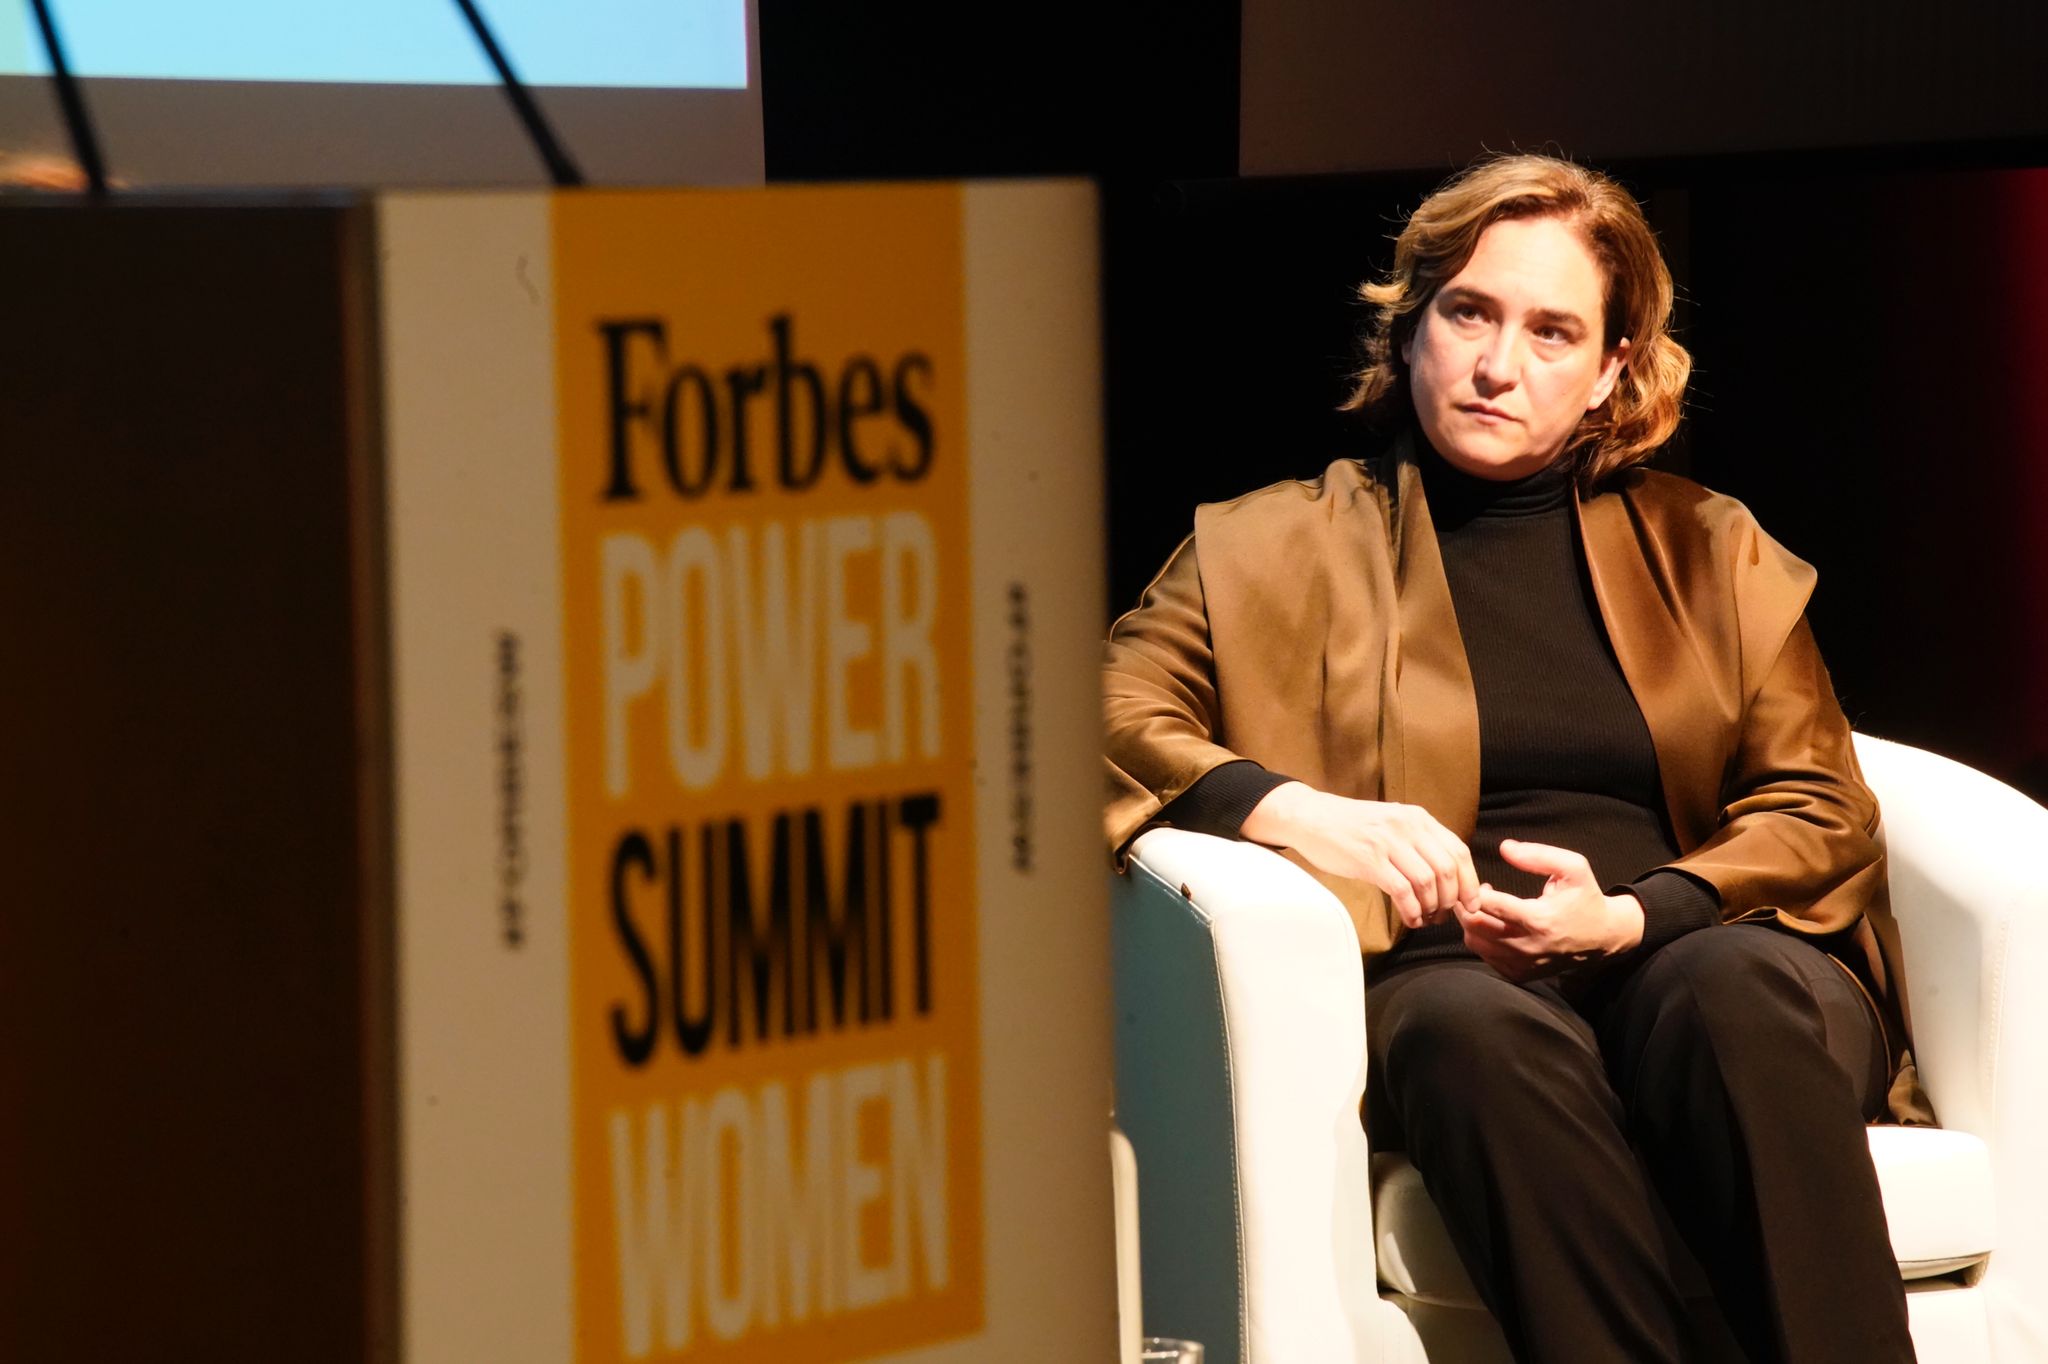 Ada Colau, alcaldesa de Barcelona, durante su intervención en el Forbes Power Summit Women 2021 celebrado en el Gran Teatre del Liceu de Barcelona. (Foto: Joan Mateu Parra)